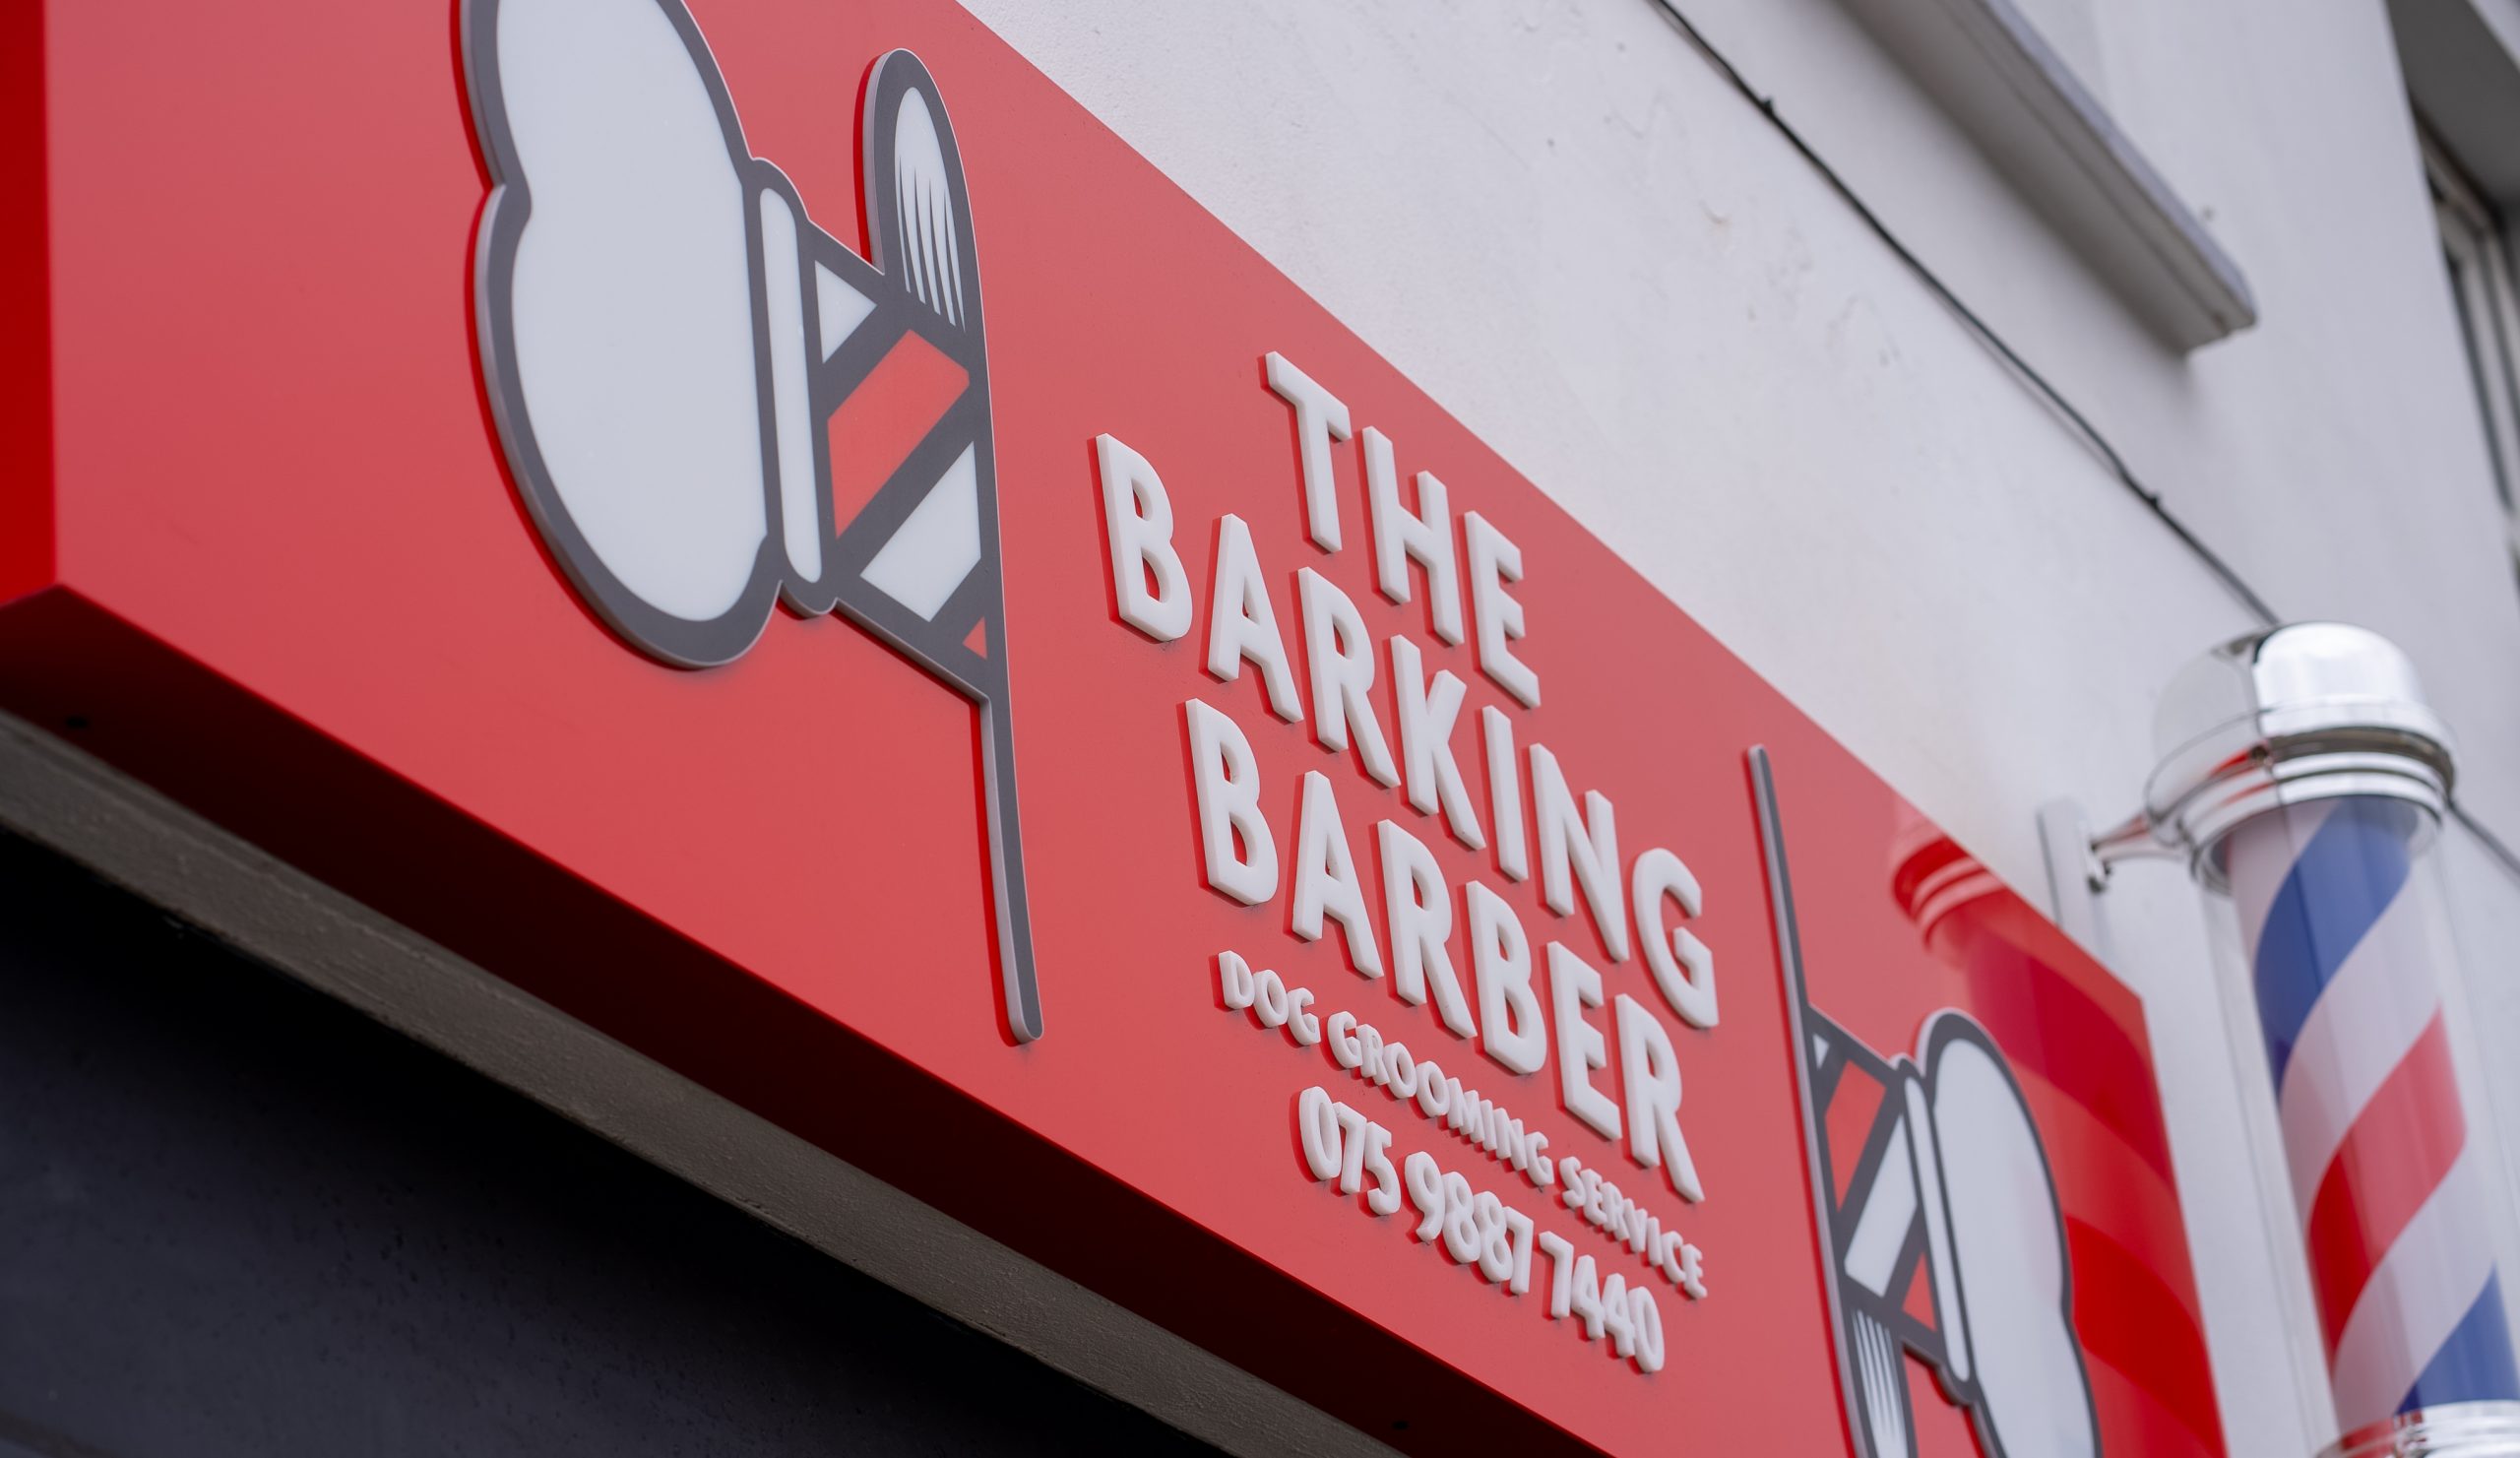 Barking Barber 3 scaled - Platform Media